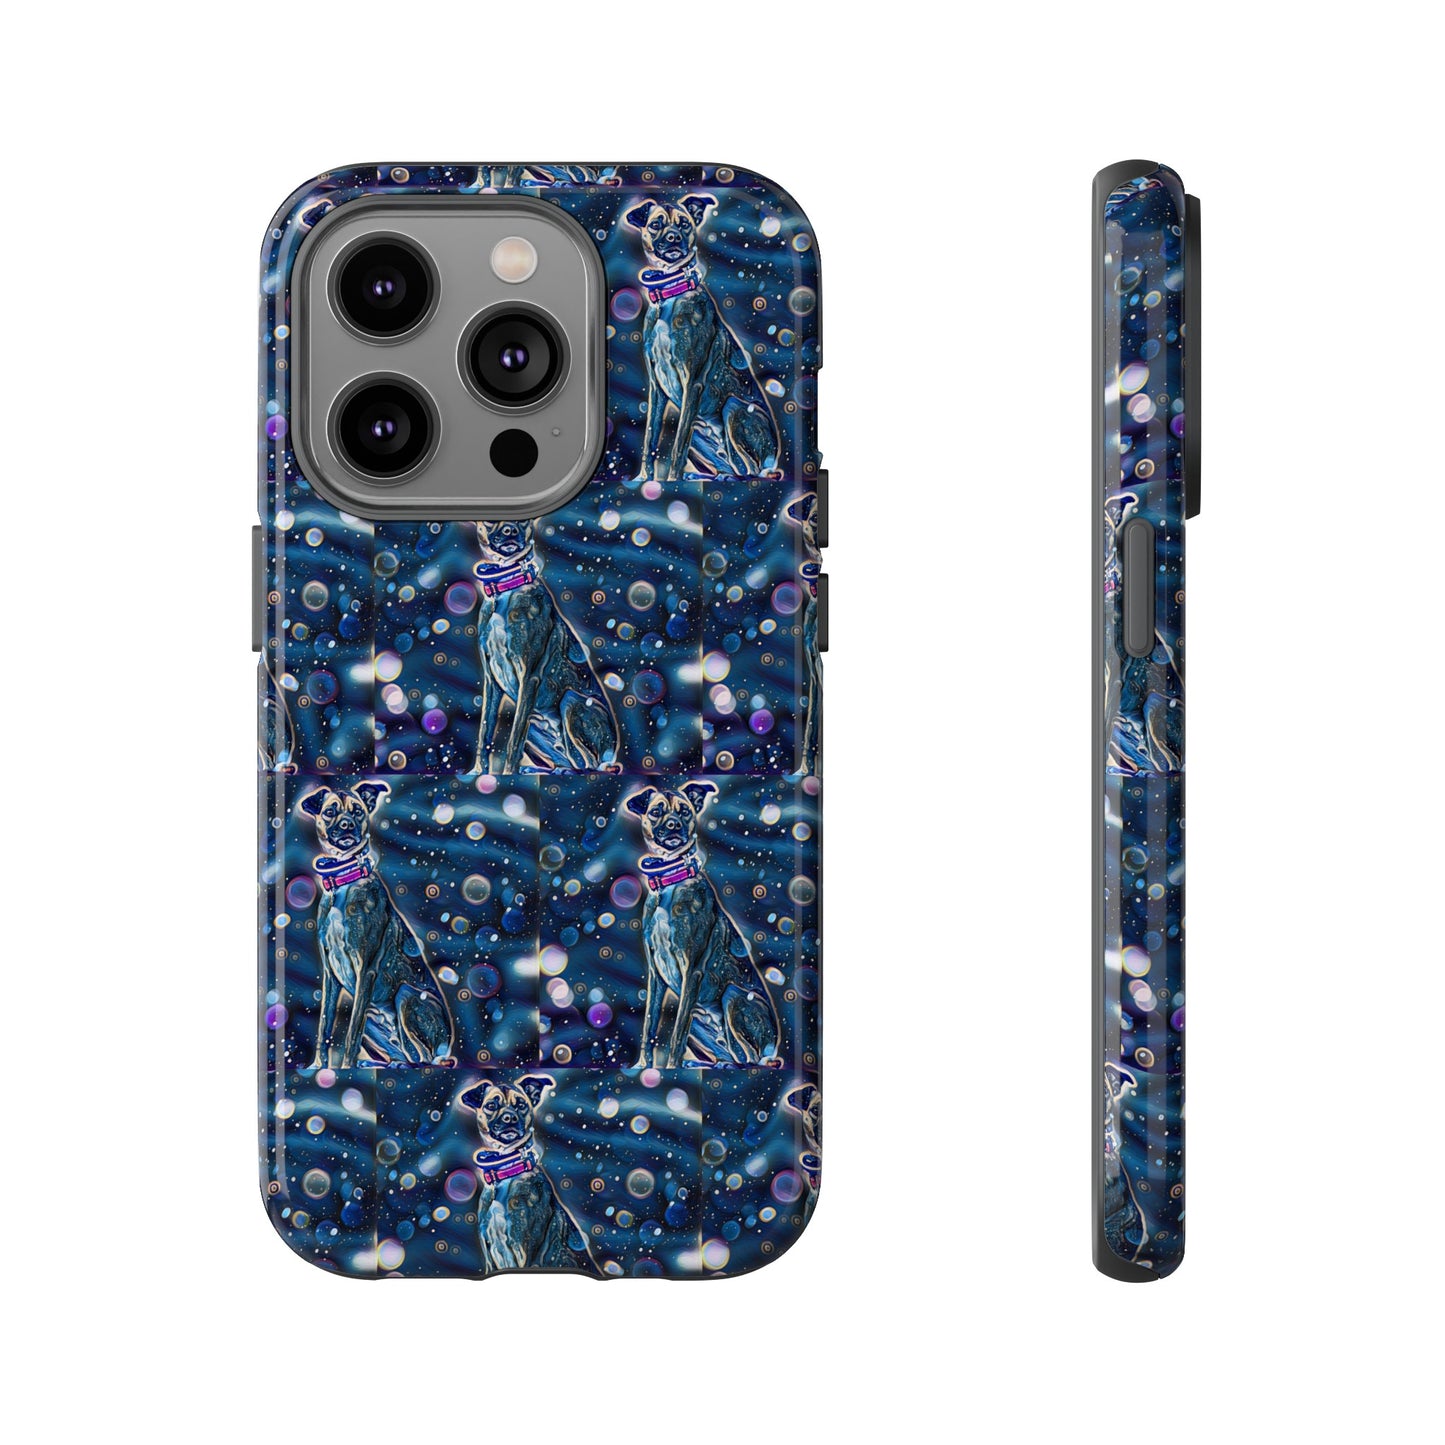 Blue Dog phone case